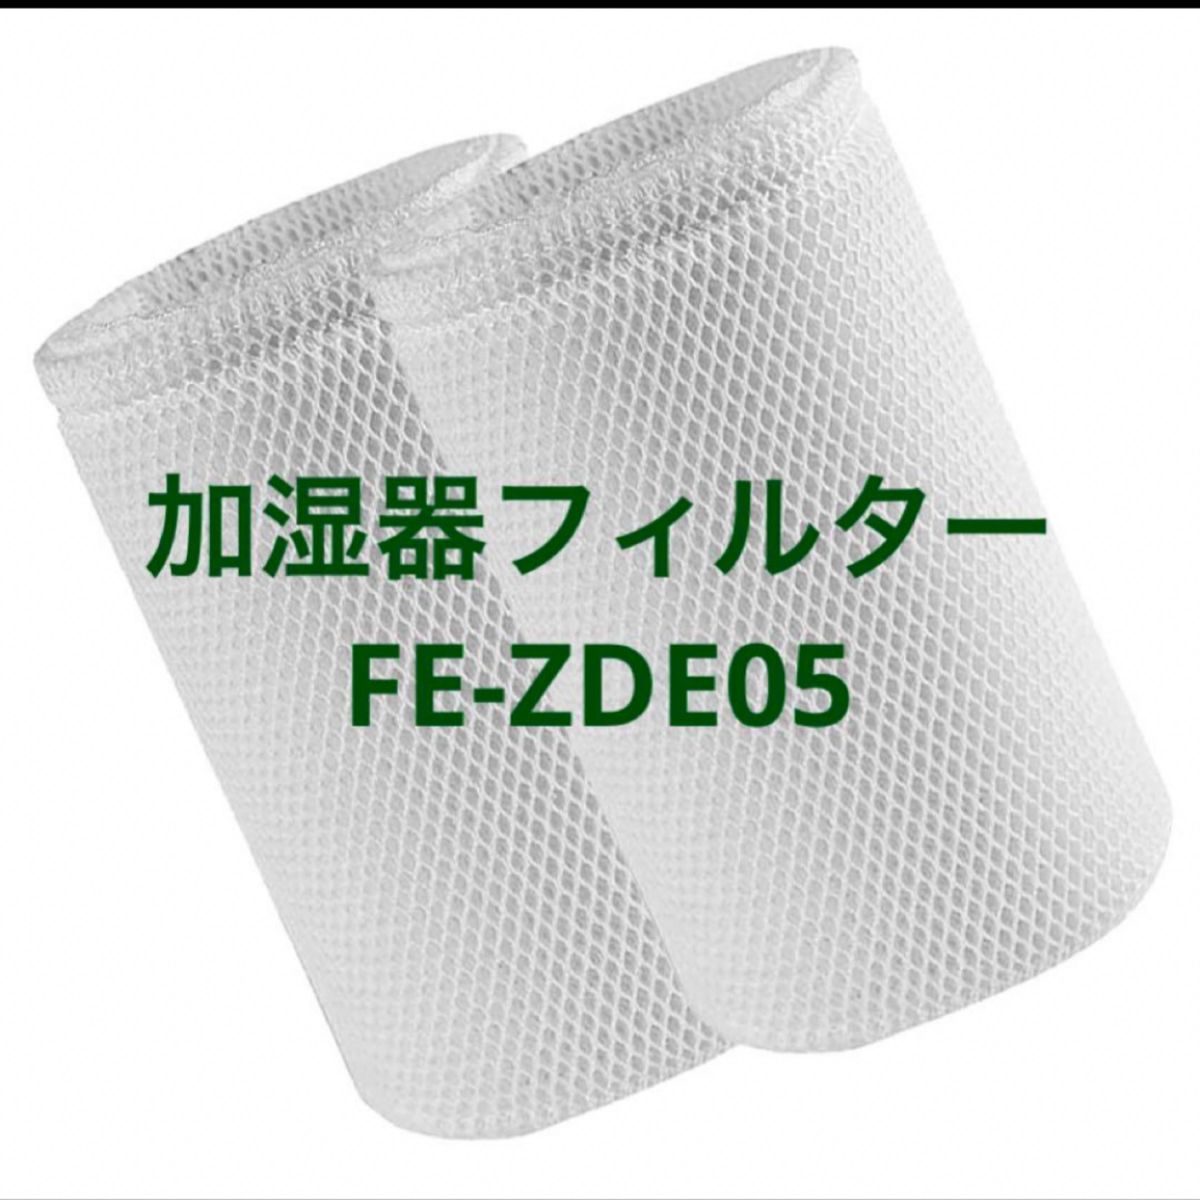 FE-ZGE05 フィルター 加湿器用 加湿機 空気清浄機用 交 - 空調